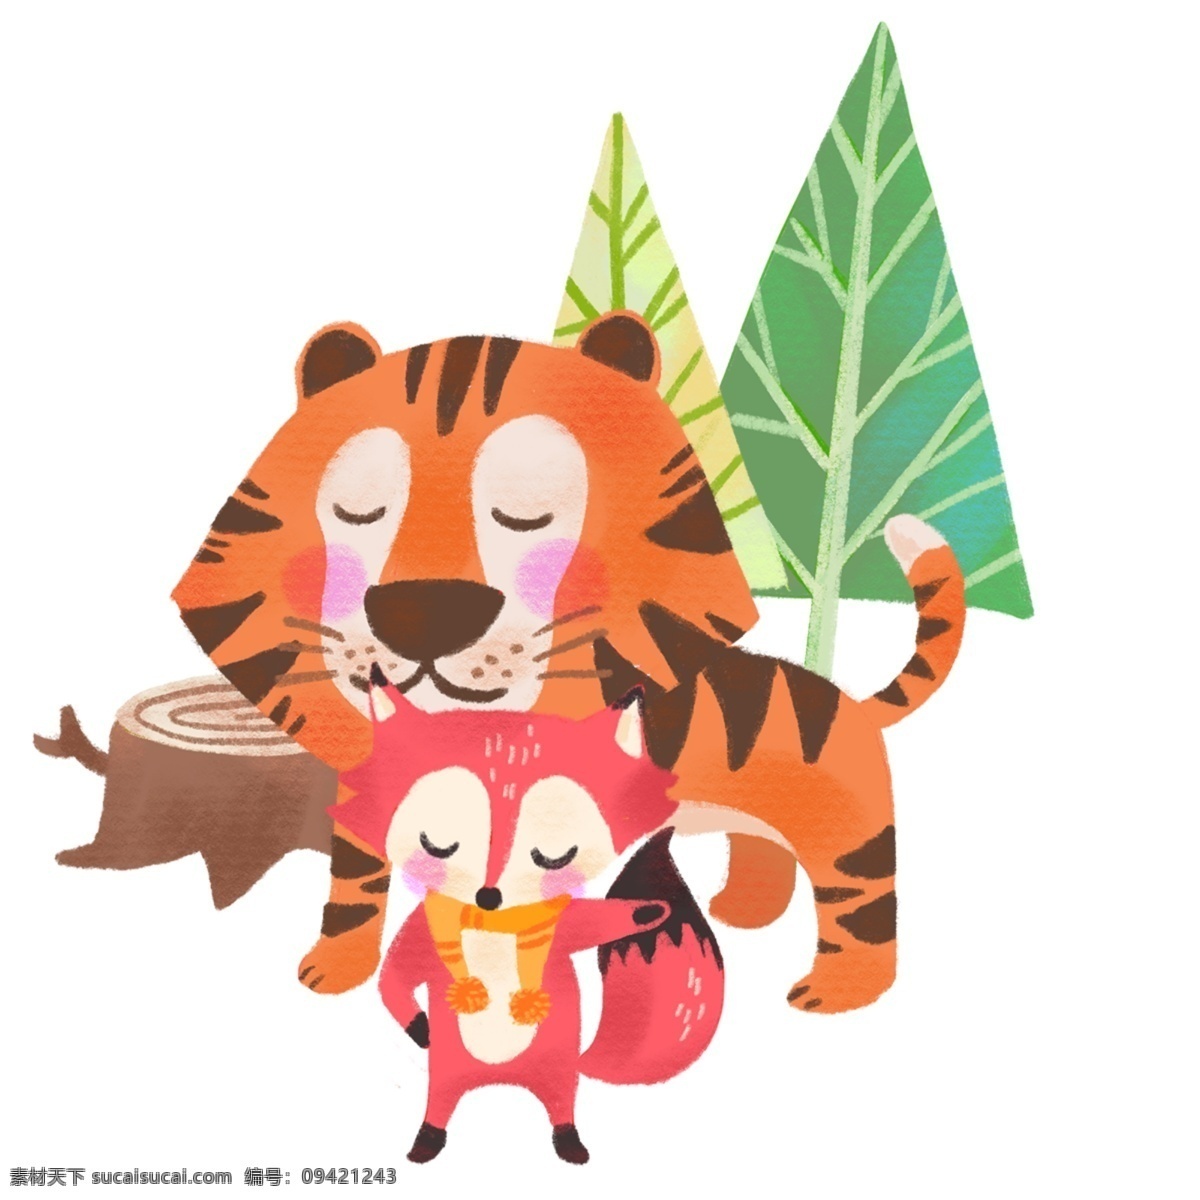 手绘 老虎 狐狸 狐假虎威 成语 可爱 卡通 森林 树木 暖色 小动物 动物 插画 儿童 童趣